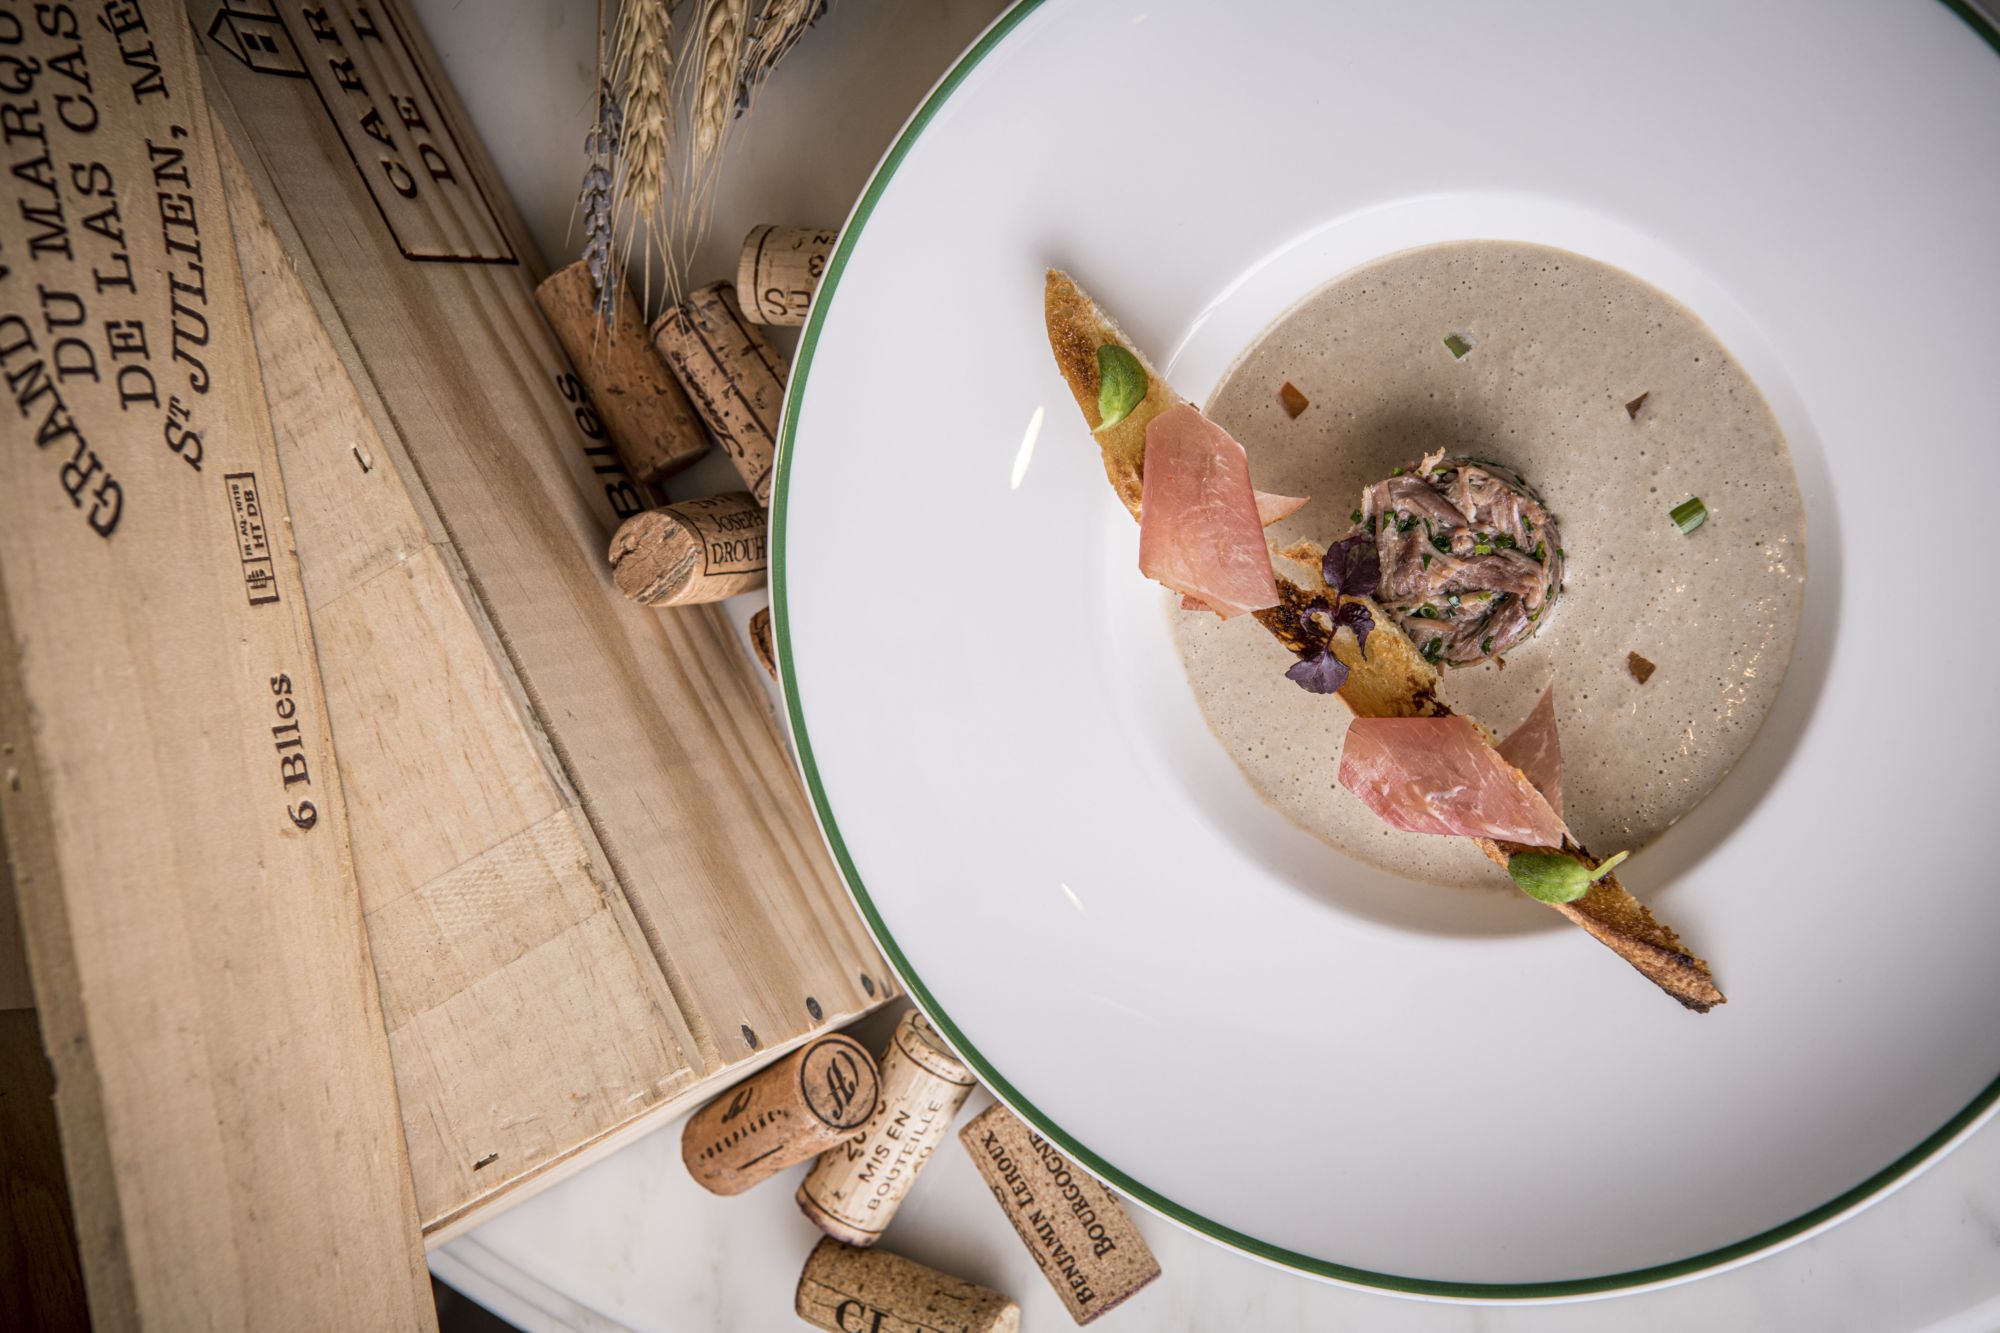 Green du Puy lentil soup with duck confit Bordeaux Set Menu Brasserie